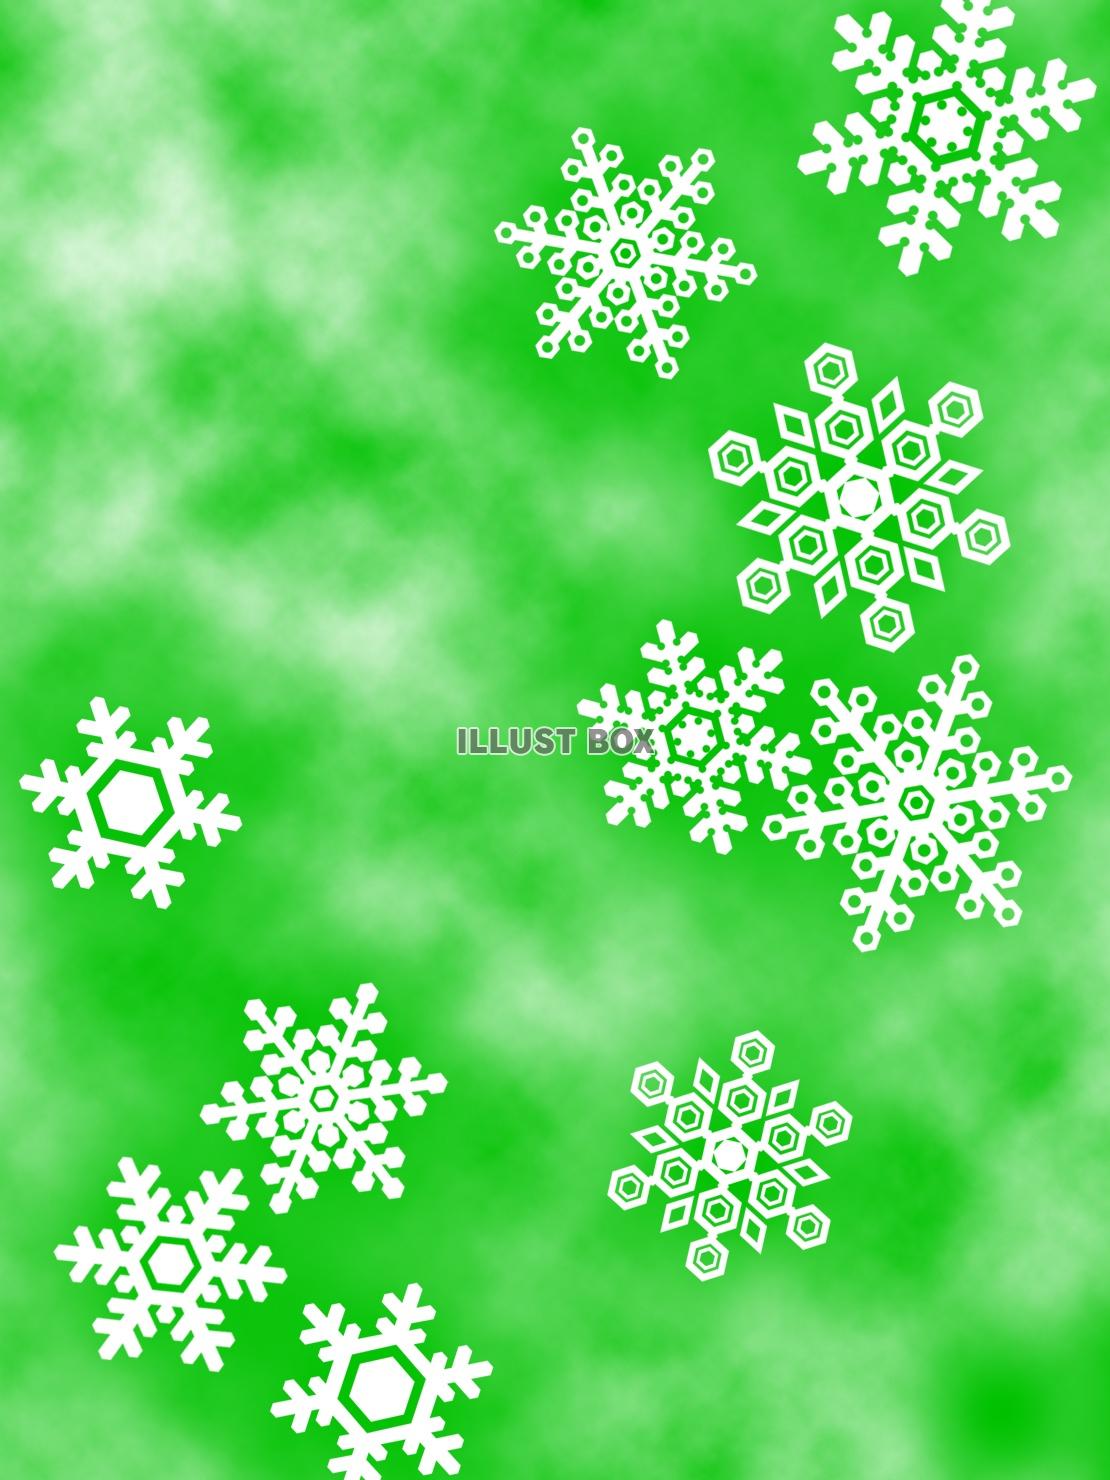 無料イラスト 雪の結晶壁紙冬のイメージ背景素材イラスト